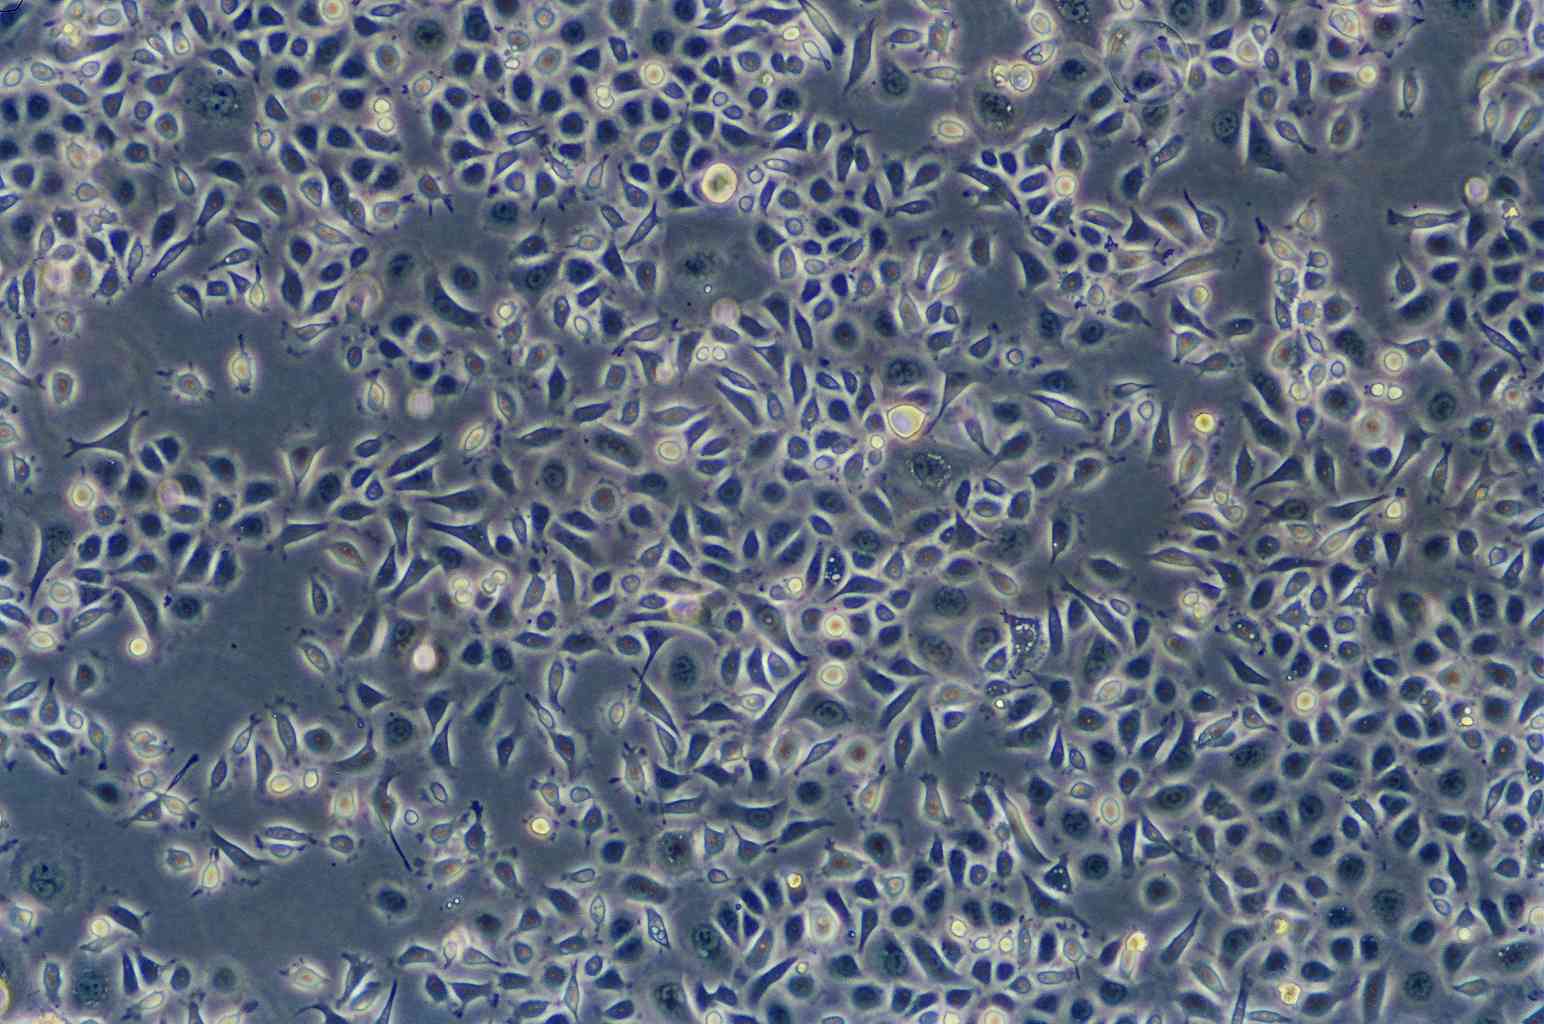 Vero 76 Cell:非洲绿猴肾细胞系